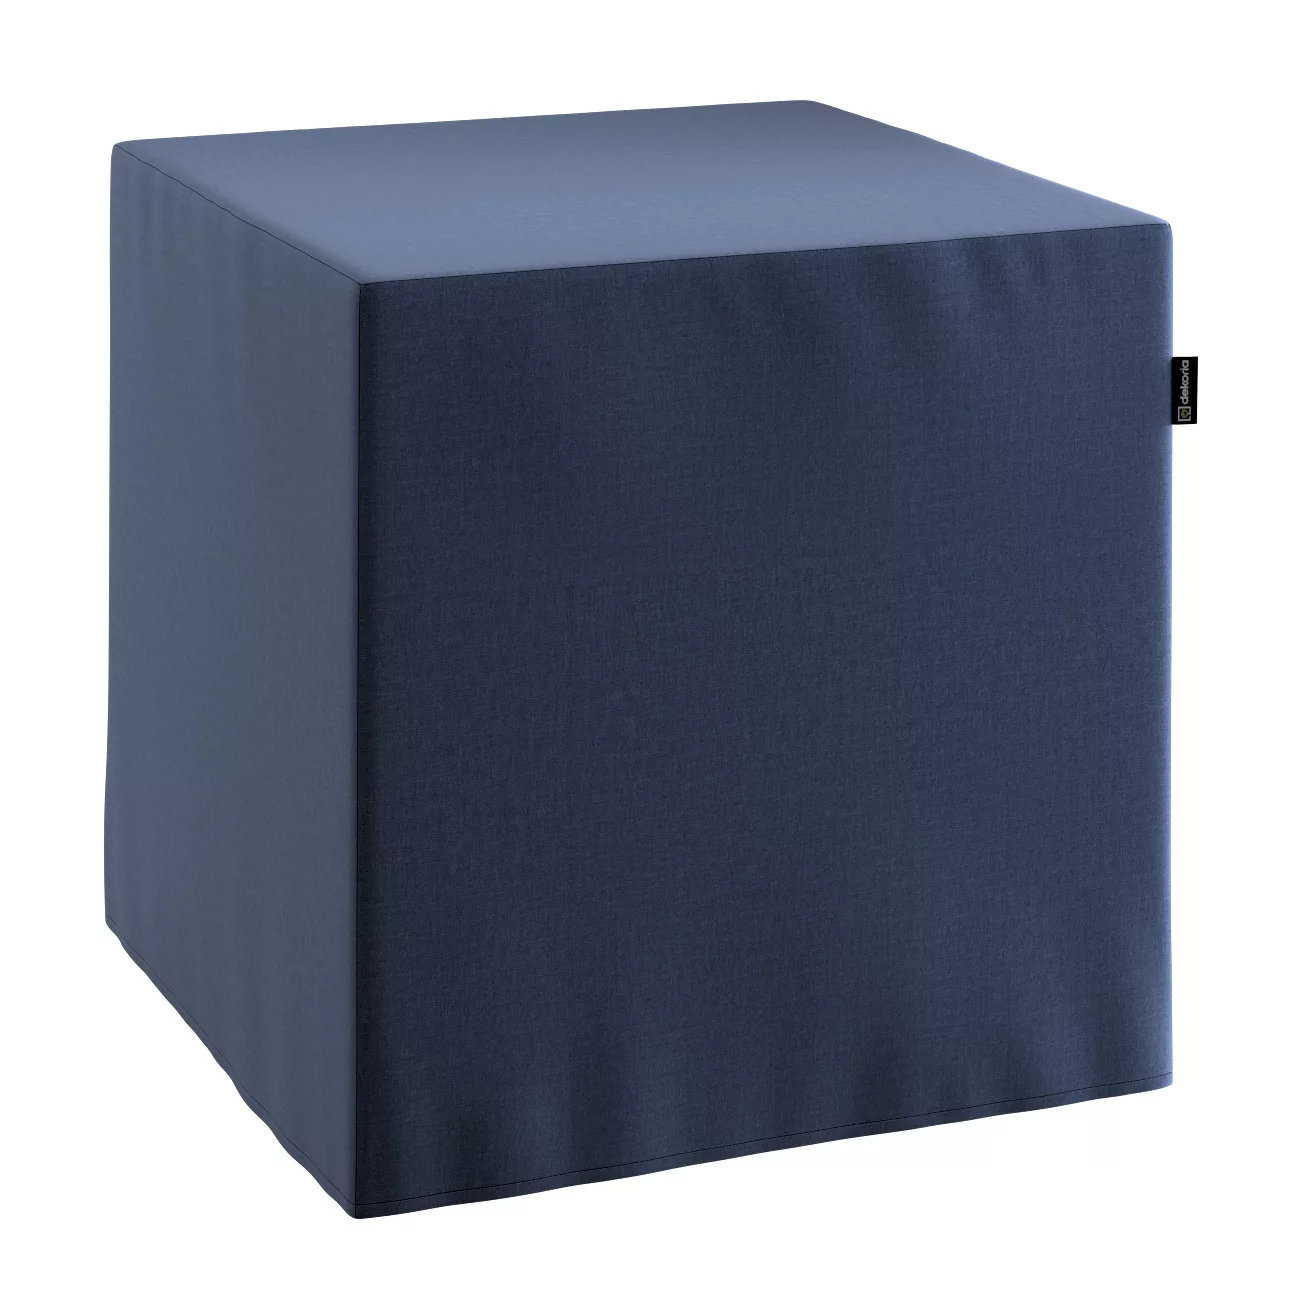 Bezug für Sitzwürfel, dunkelblau, Bezug für Sitzwürfel 40 x 40 x 40 cm, Ing günstig online kaufen